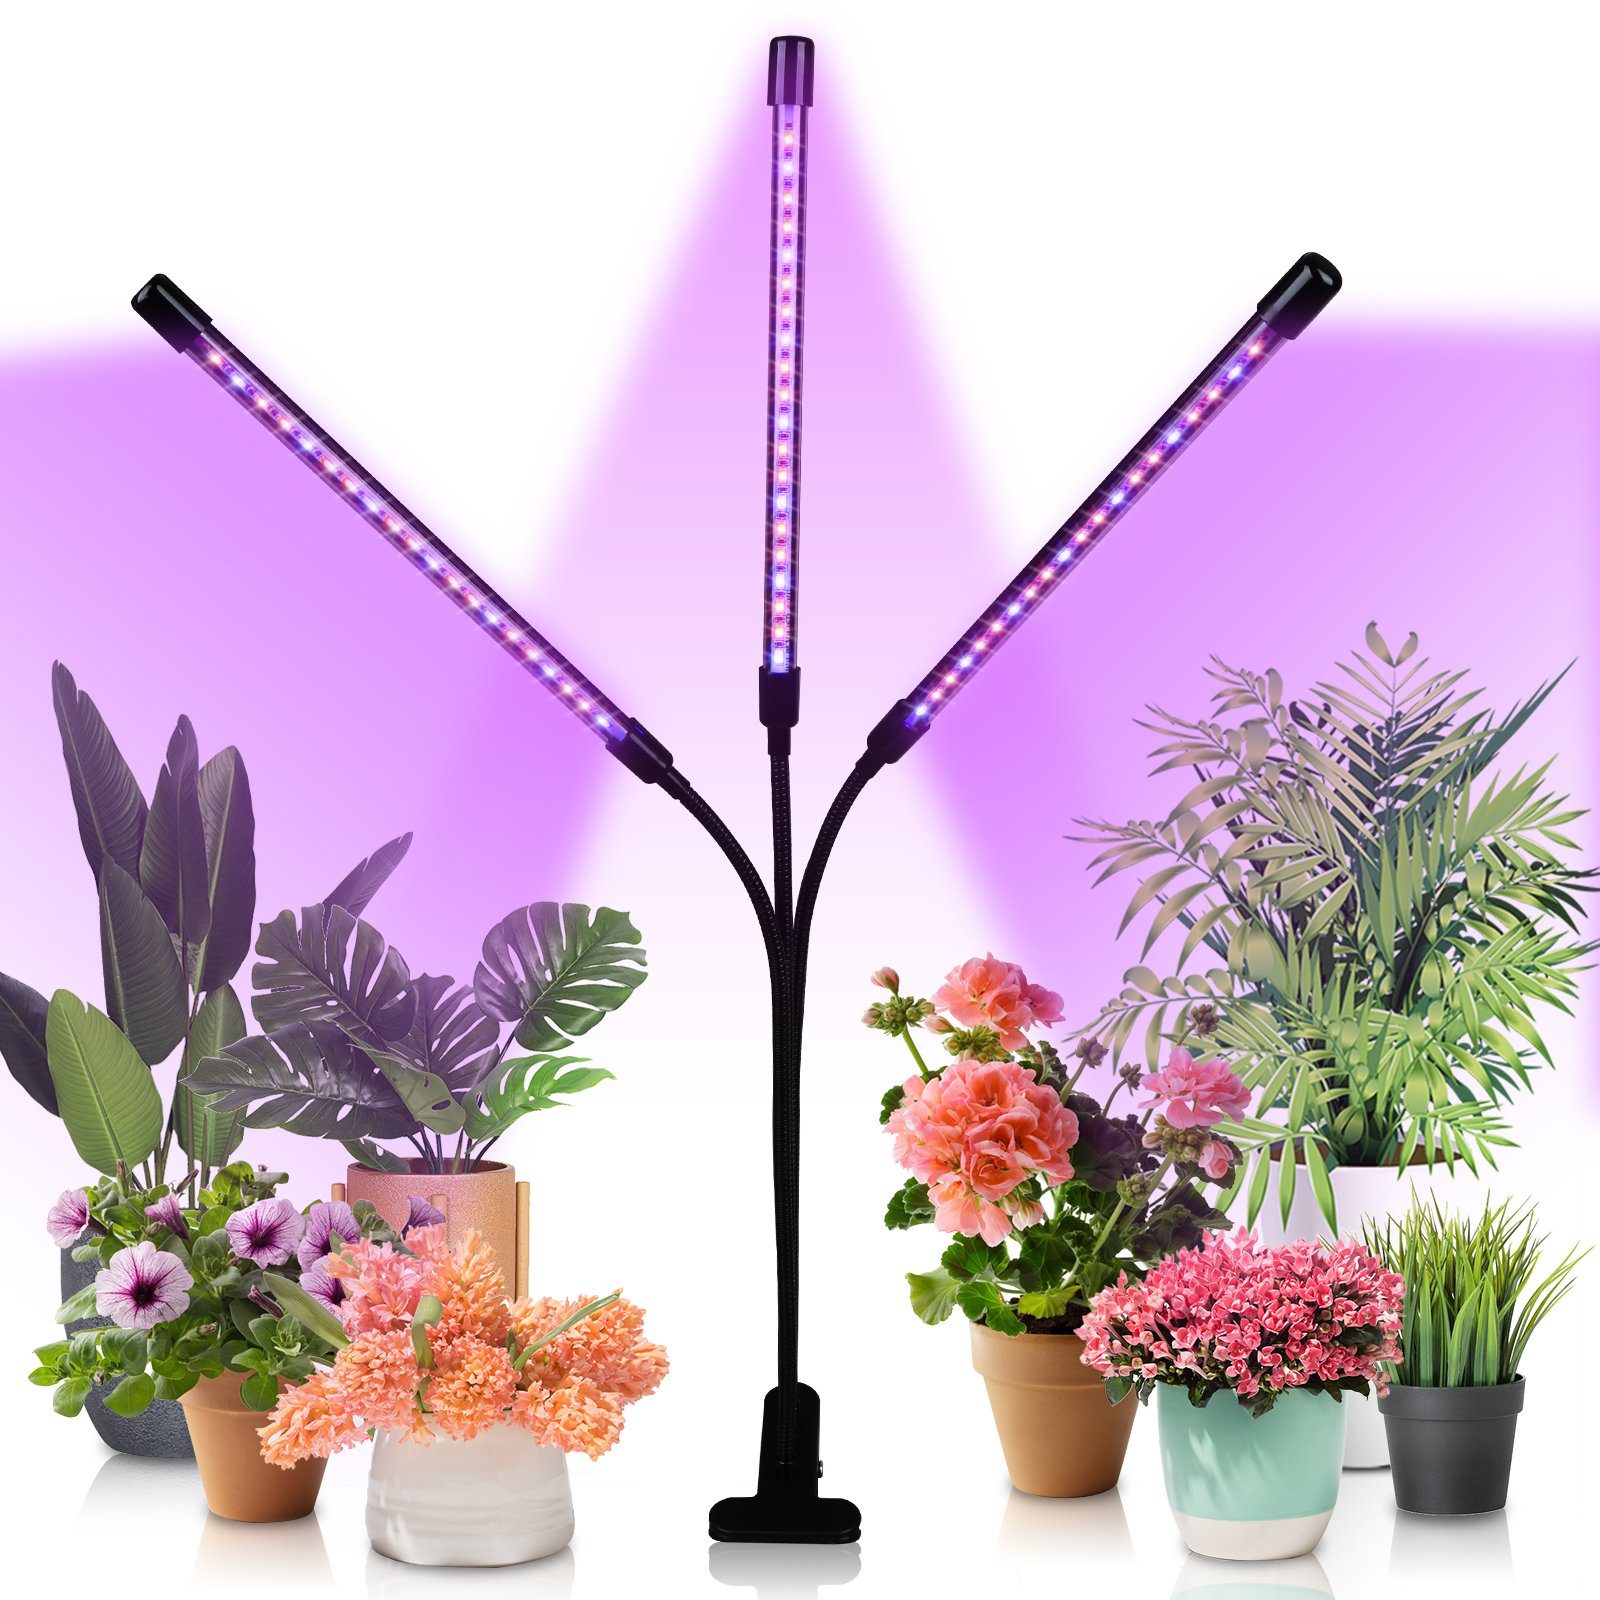 Lospitch Pflanzenlampe 3 Kopf LED Pflanzenlicht 30W Dimmbar Vollspektrum Wachstumslampe | Pflanzenlampen